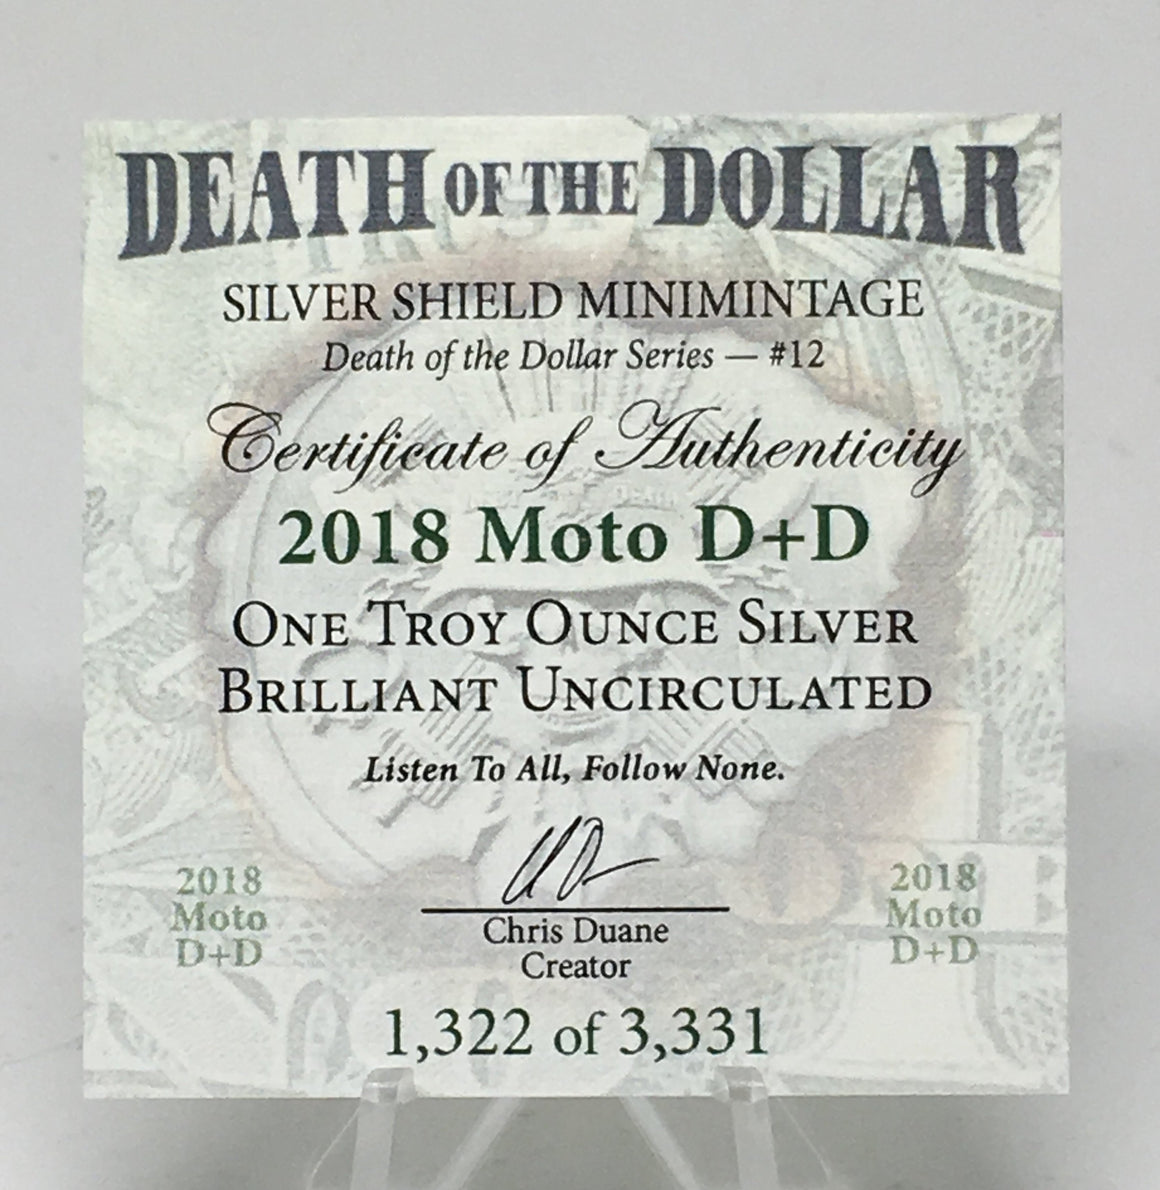 2018 Moto D+D by Silver Shield, Mini Mintage - BU 1 oz .999 Silver Round